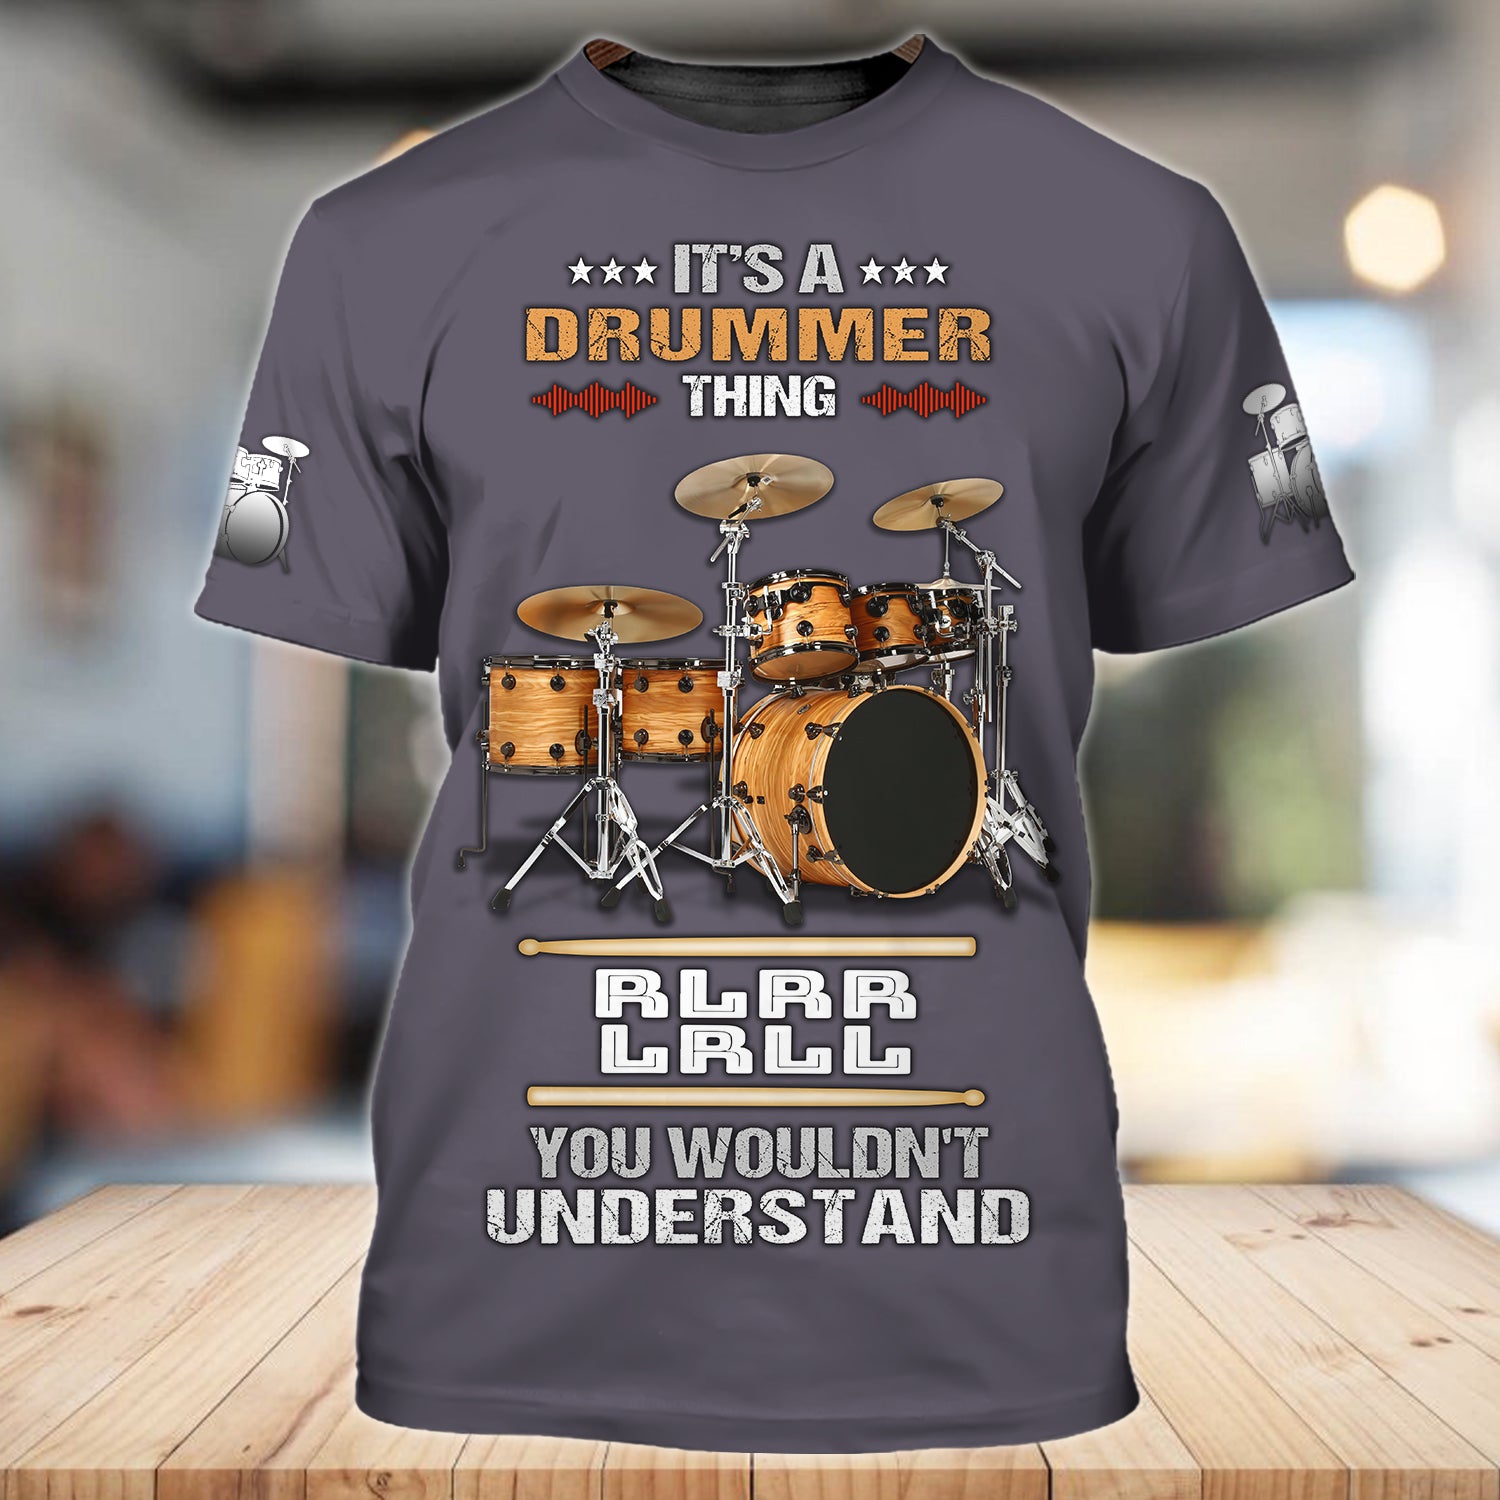 Drummer Thing - Hadn